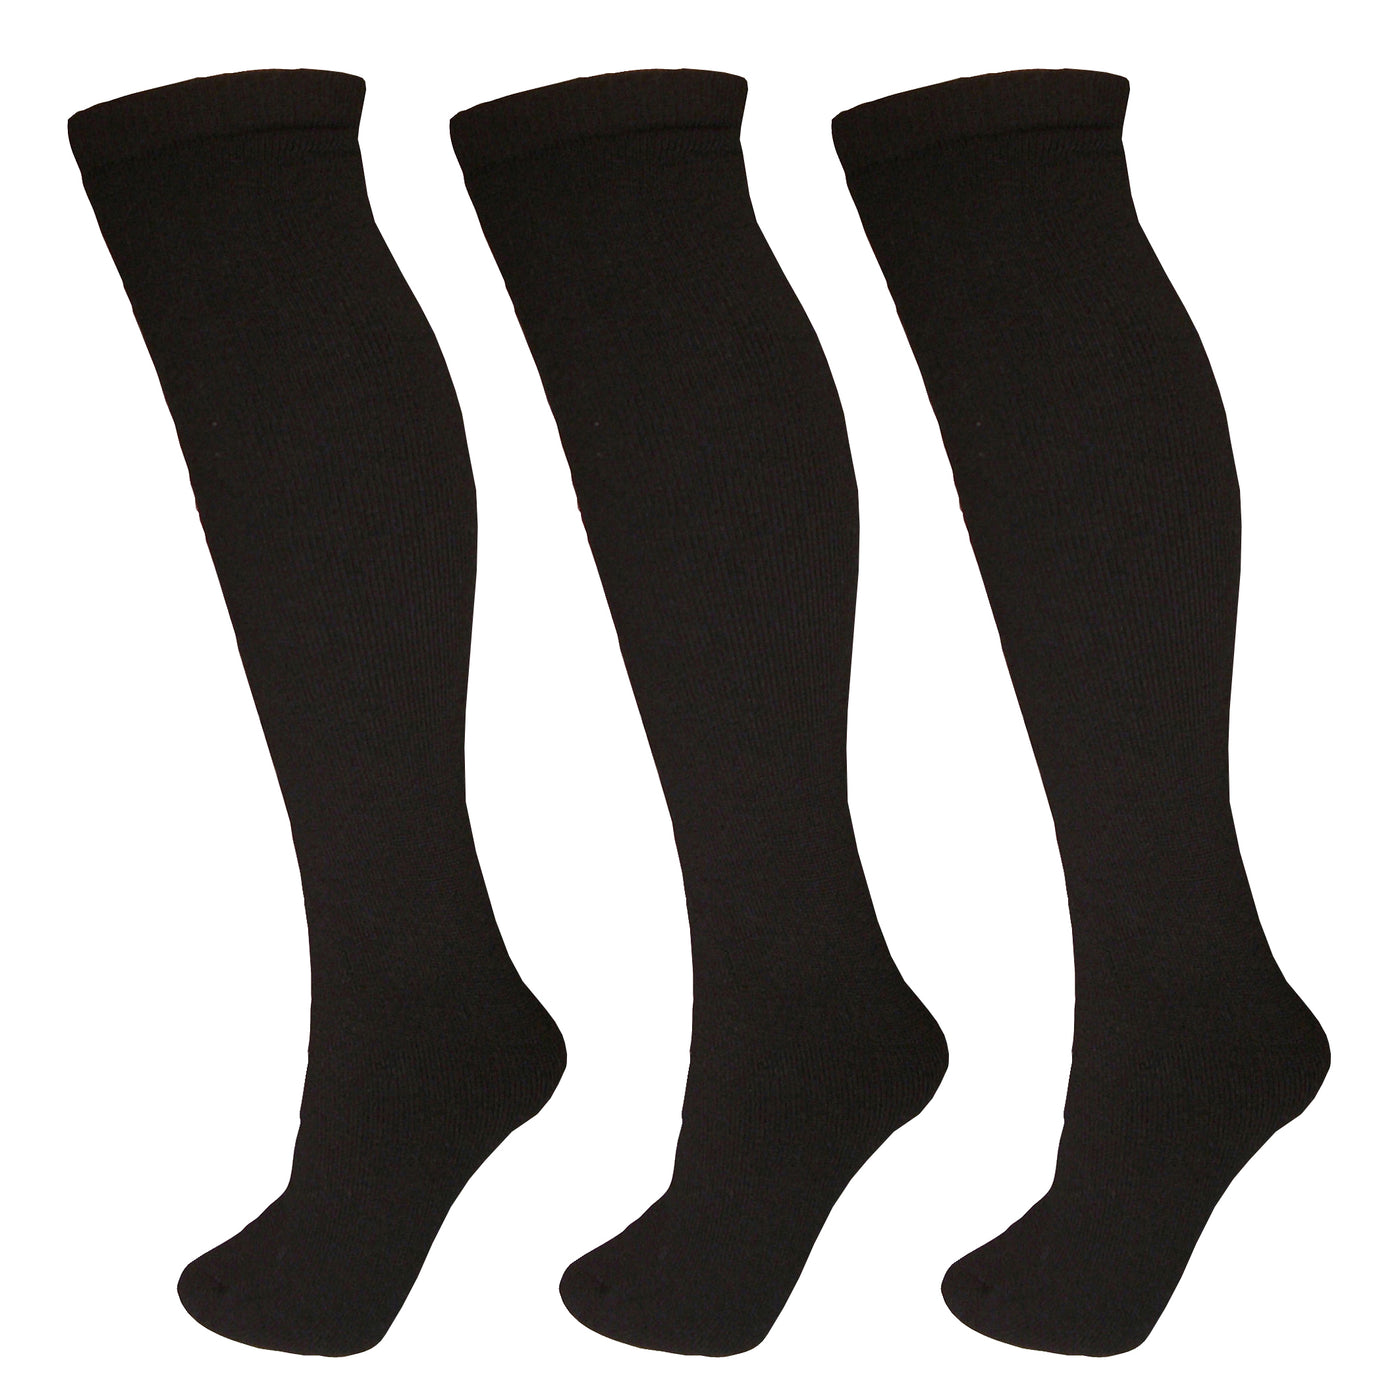 Manbi-PPP Adult Essential Tube Sock Triple Pack Black